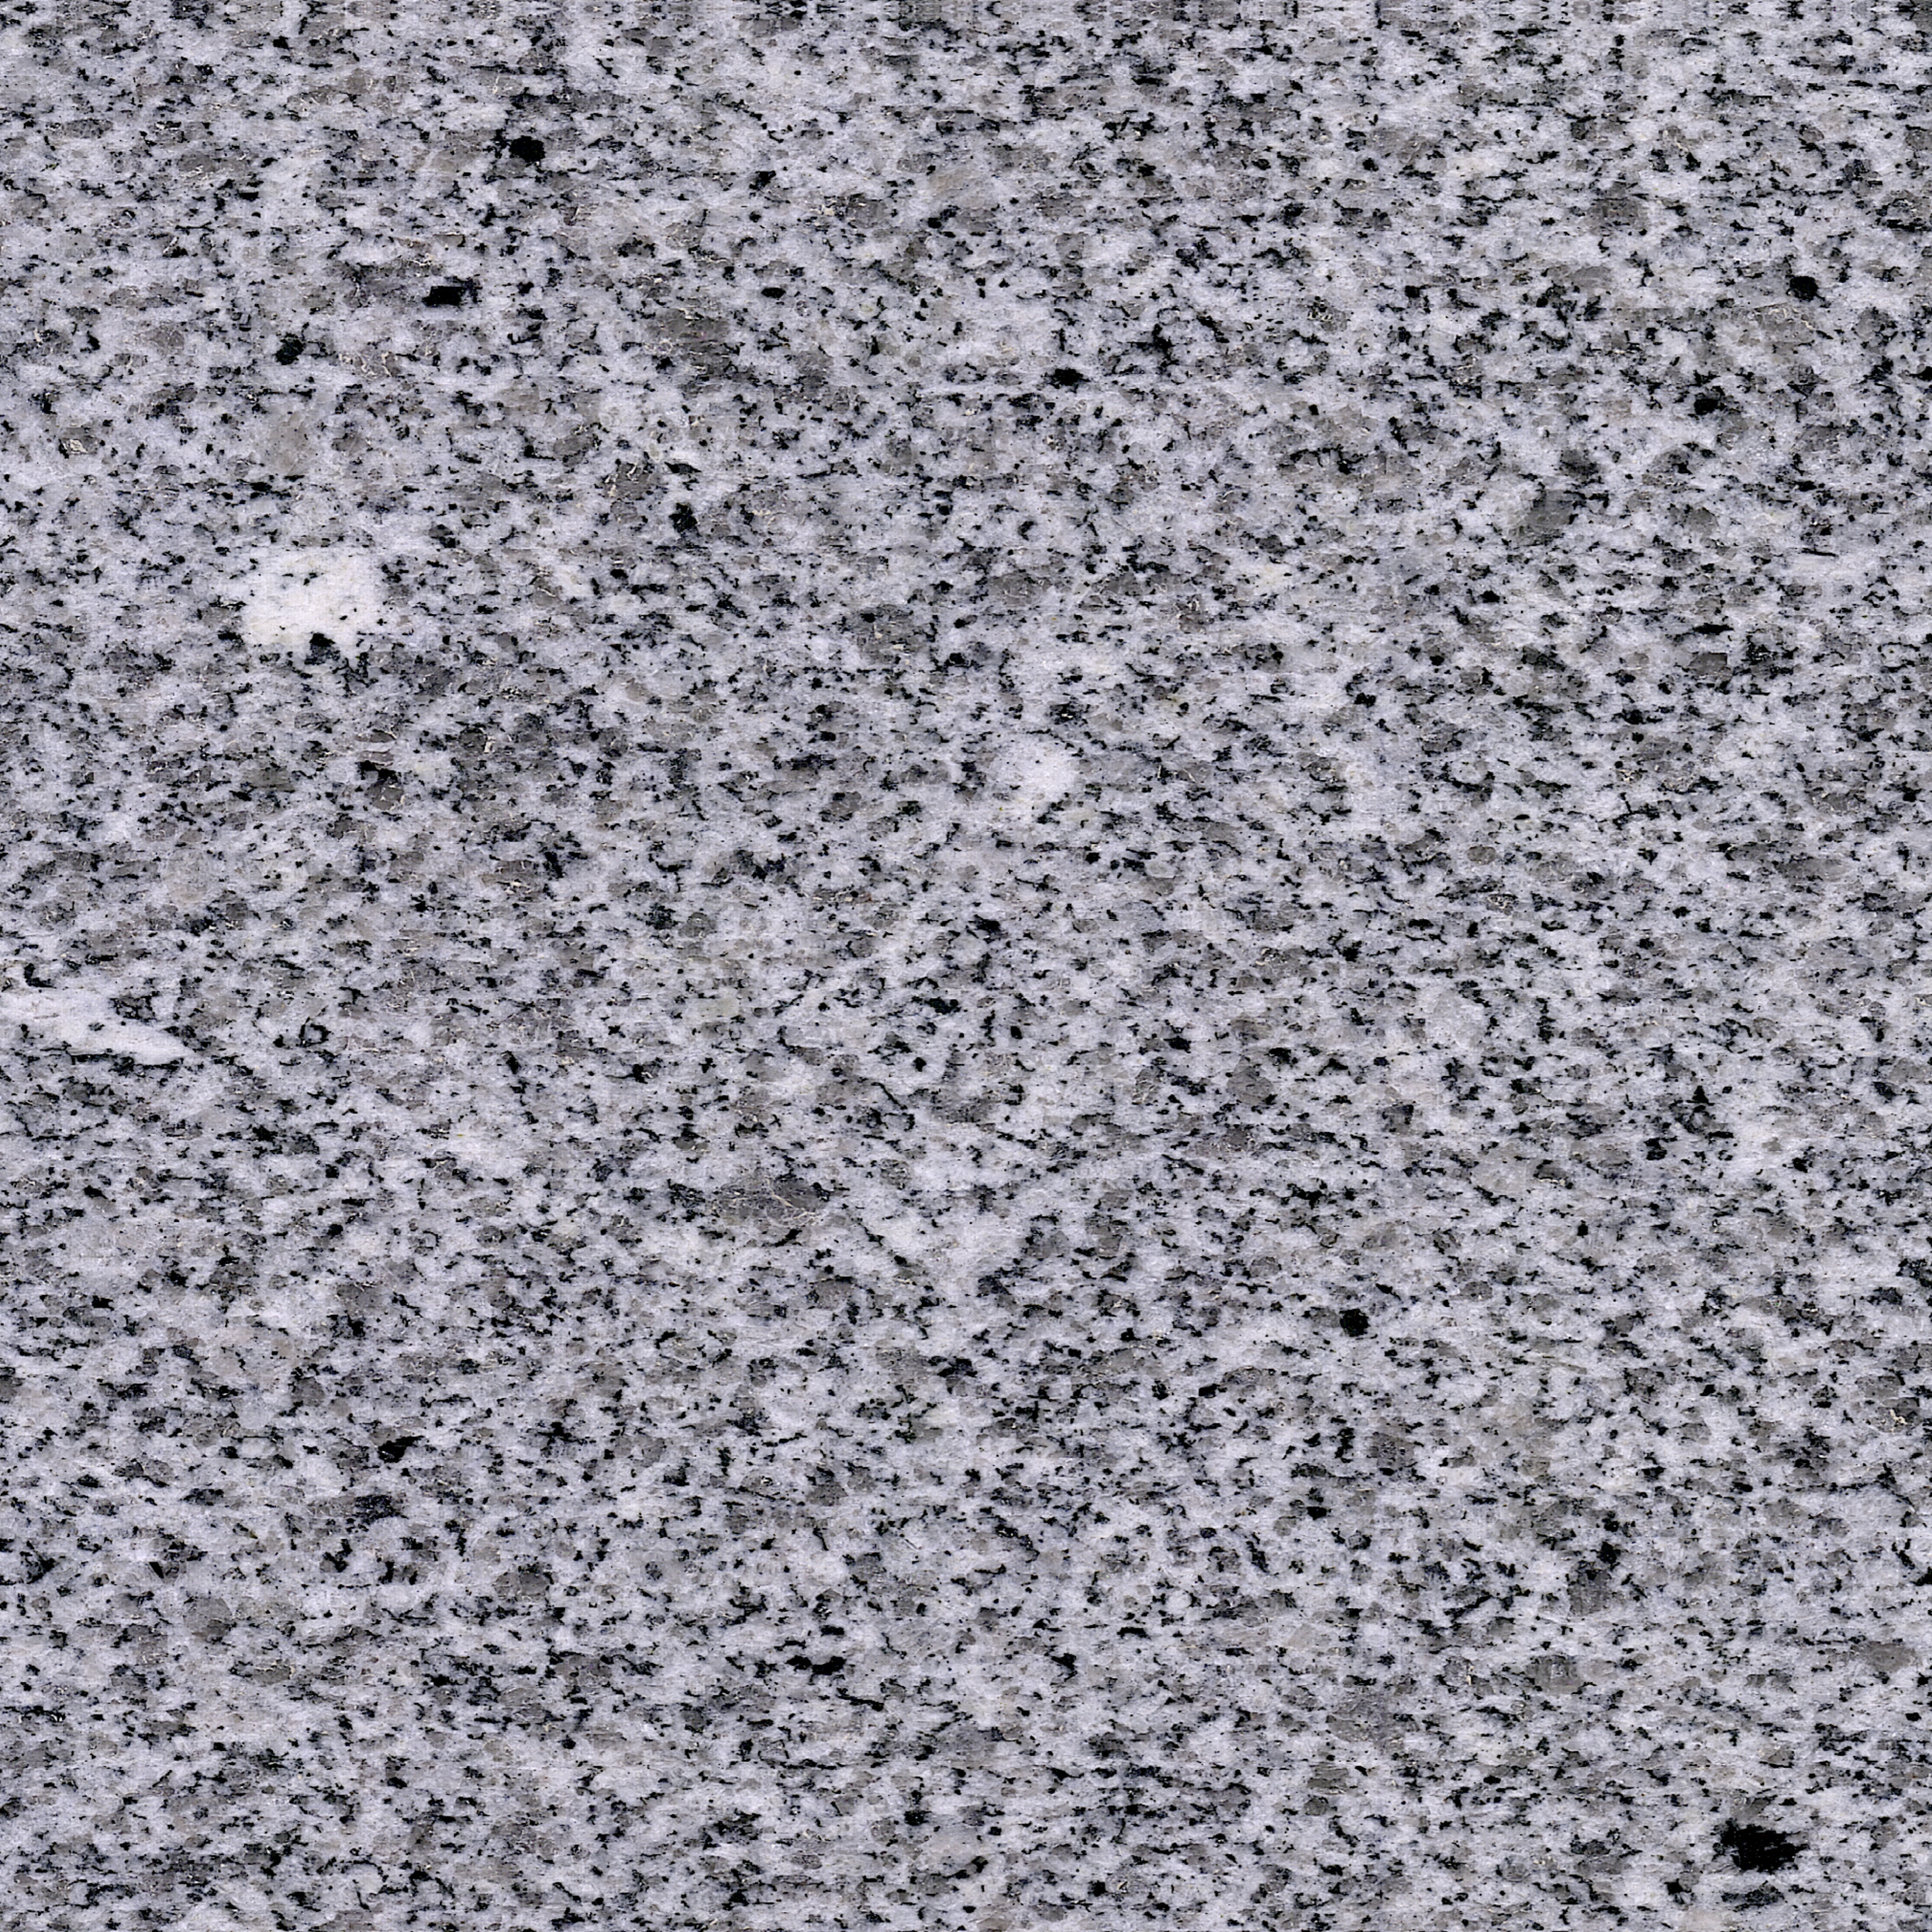 G603 White Beauty Granite